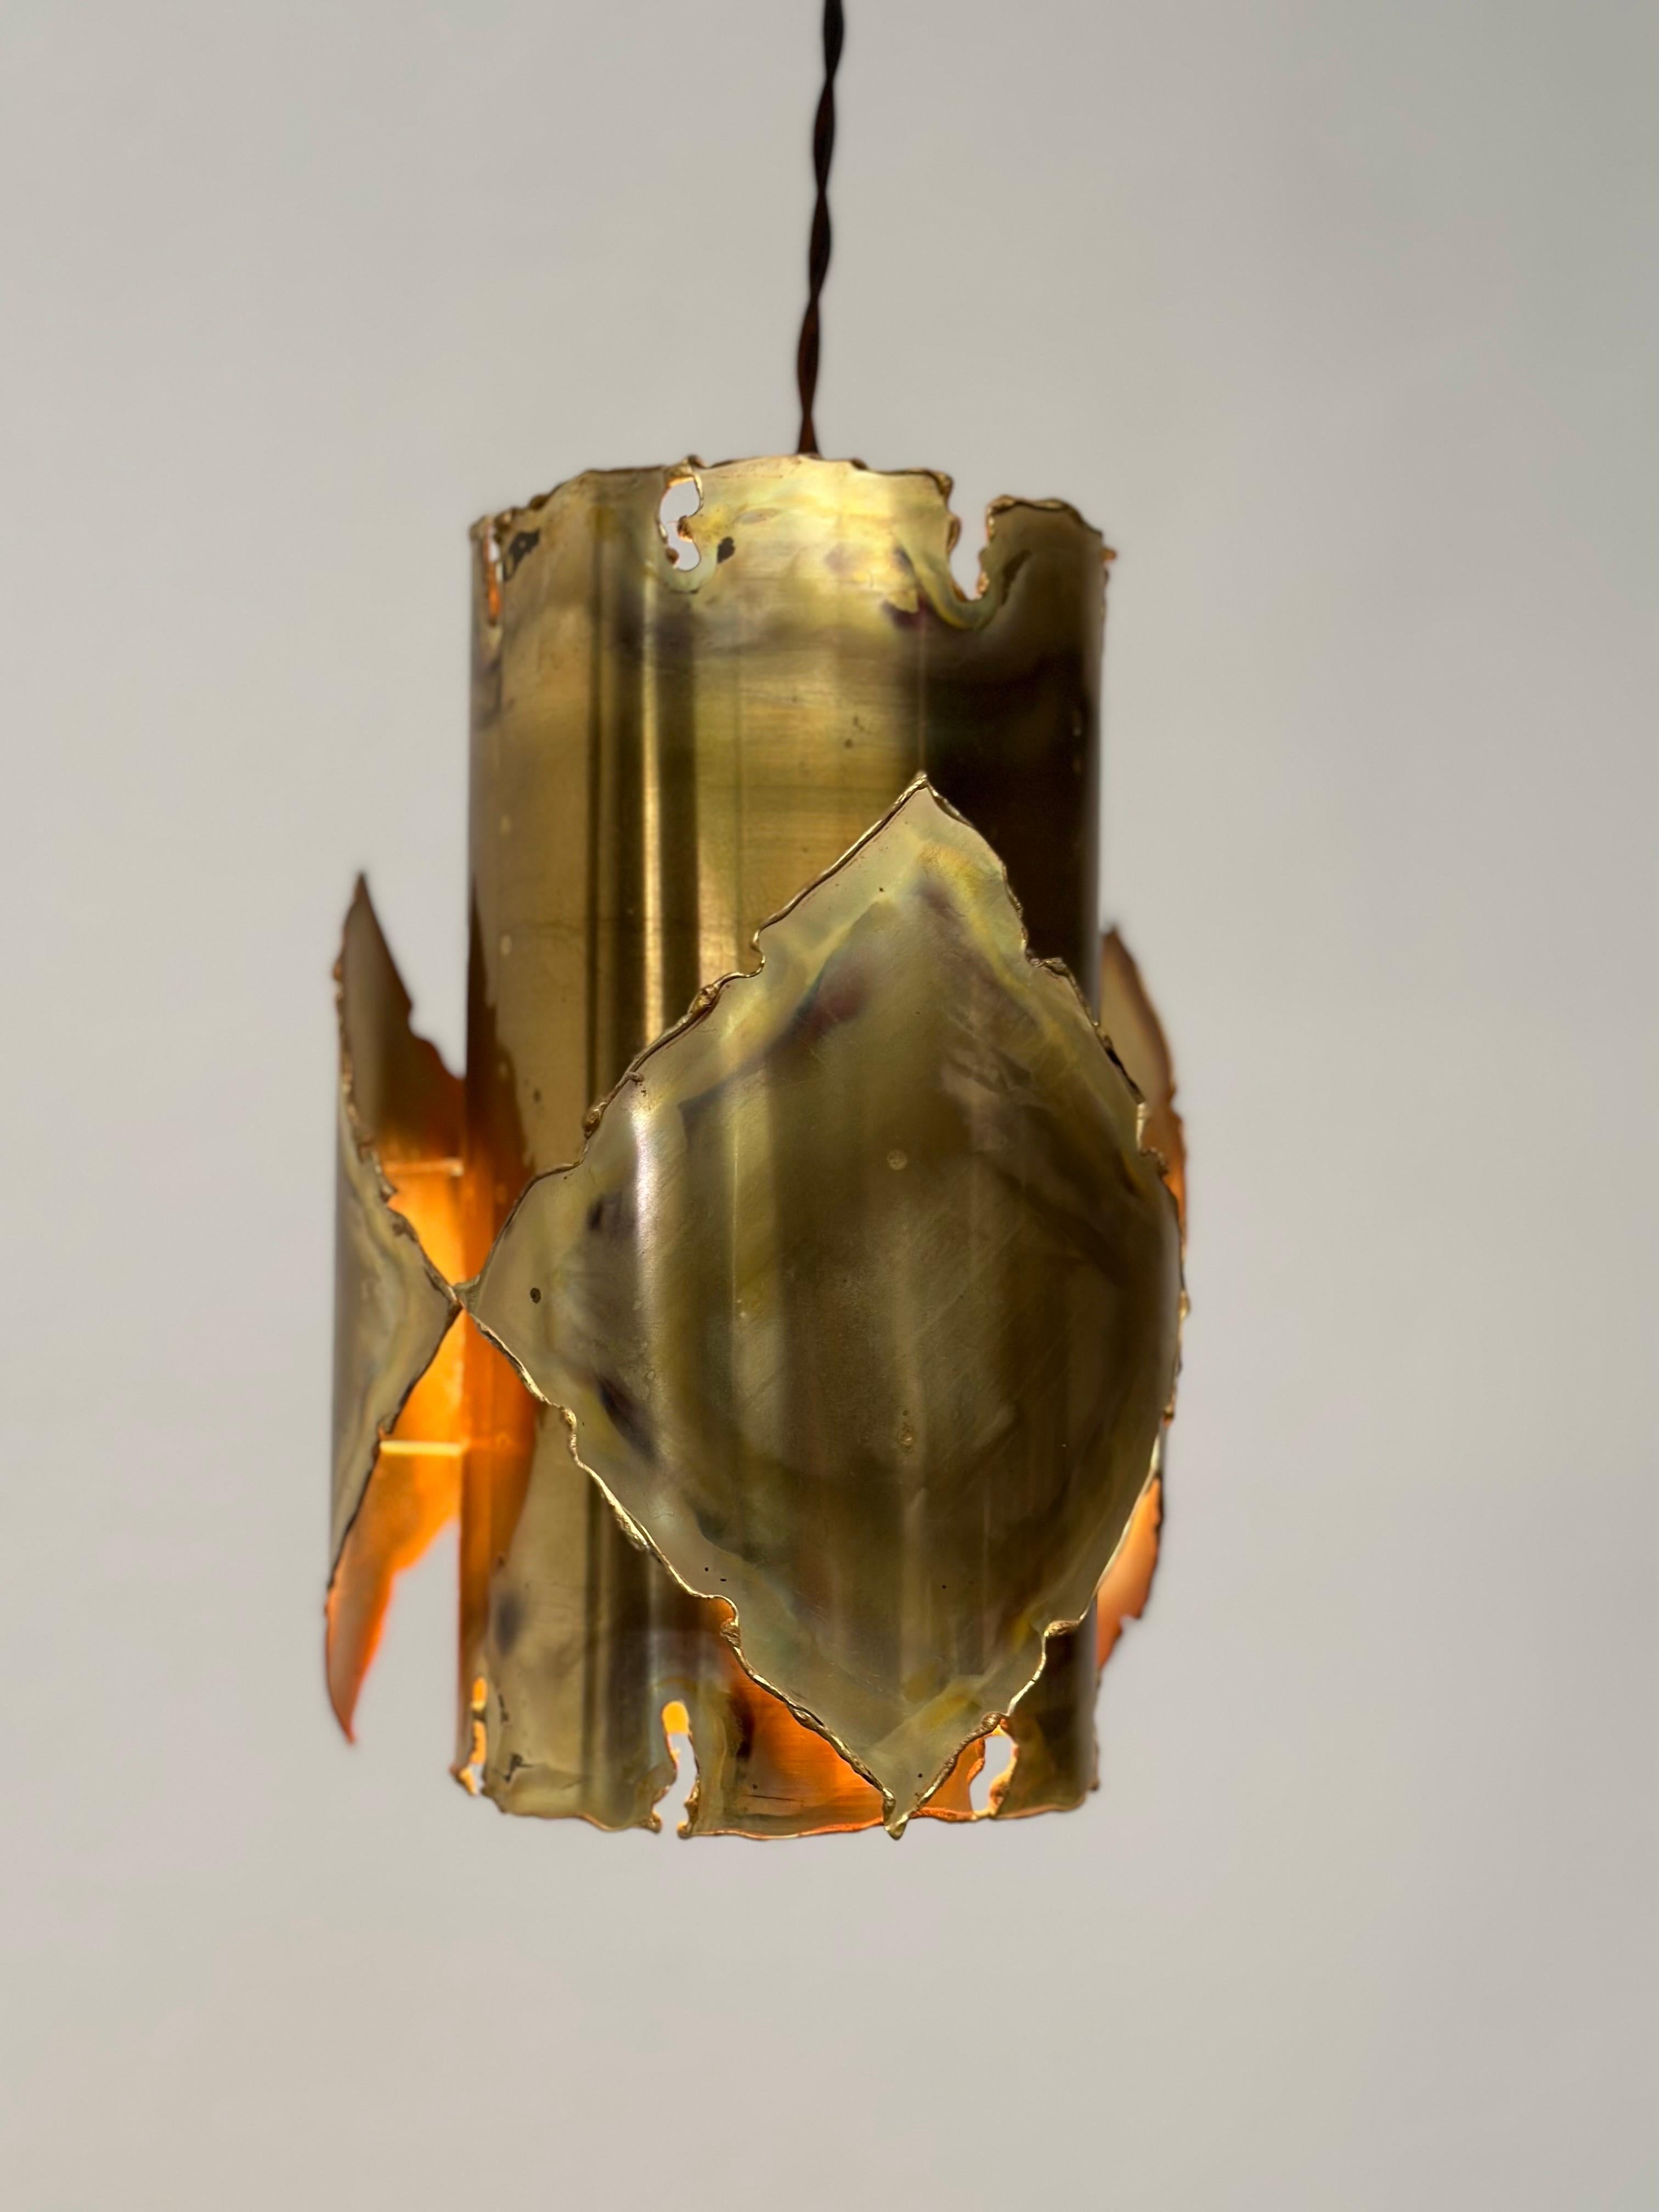 Exquisite Deckenlampe im Brutalismus von Sven Aage Jensen für Holm Sørensen (1960er Jahre)

Entdecken Sie die Essenz der modernen Eleganz der Jahrhundertmitte mit dieser bemerkenswerten brutalistischen Deckenlampe aus Messing, einer fesselnden